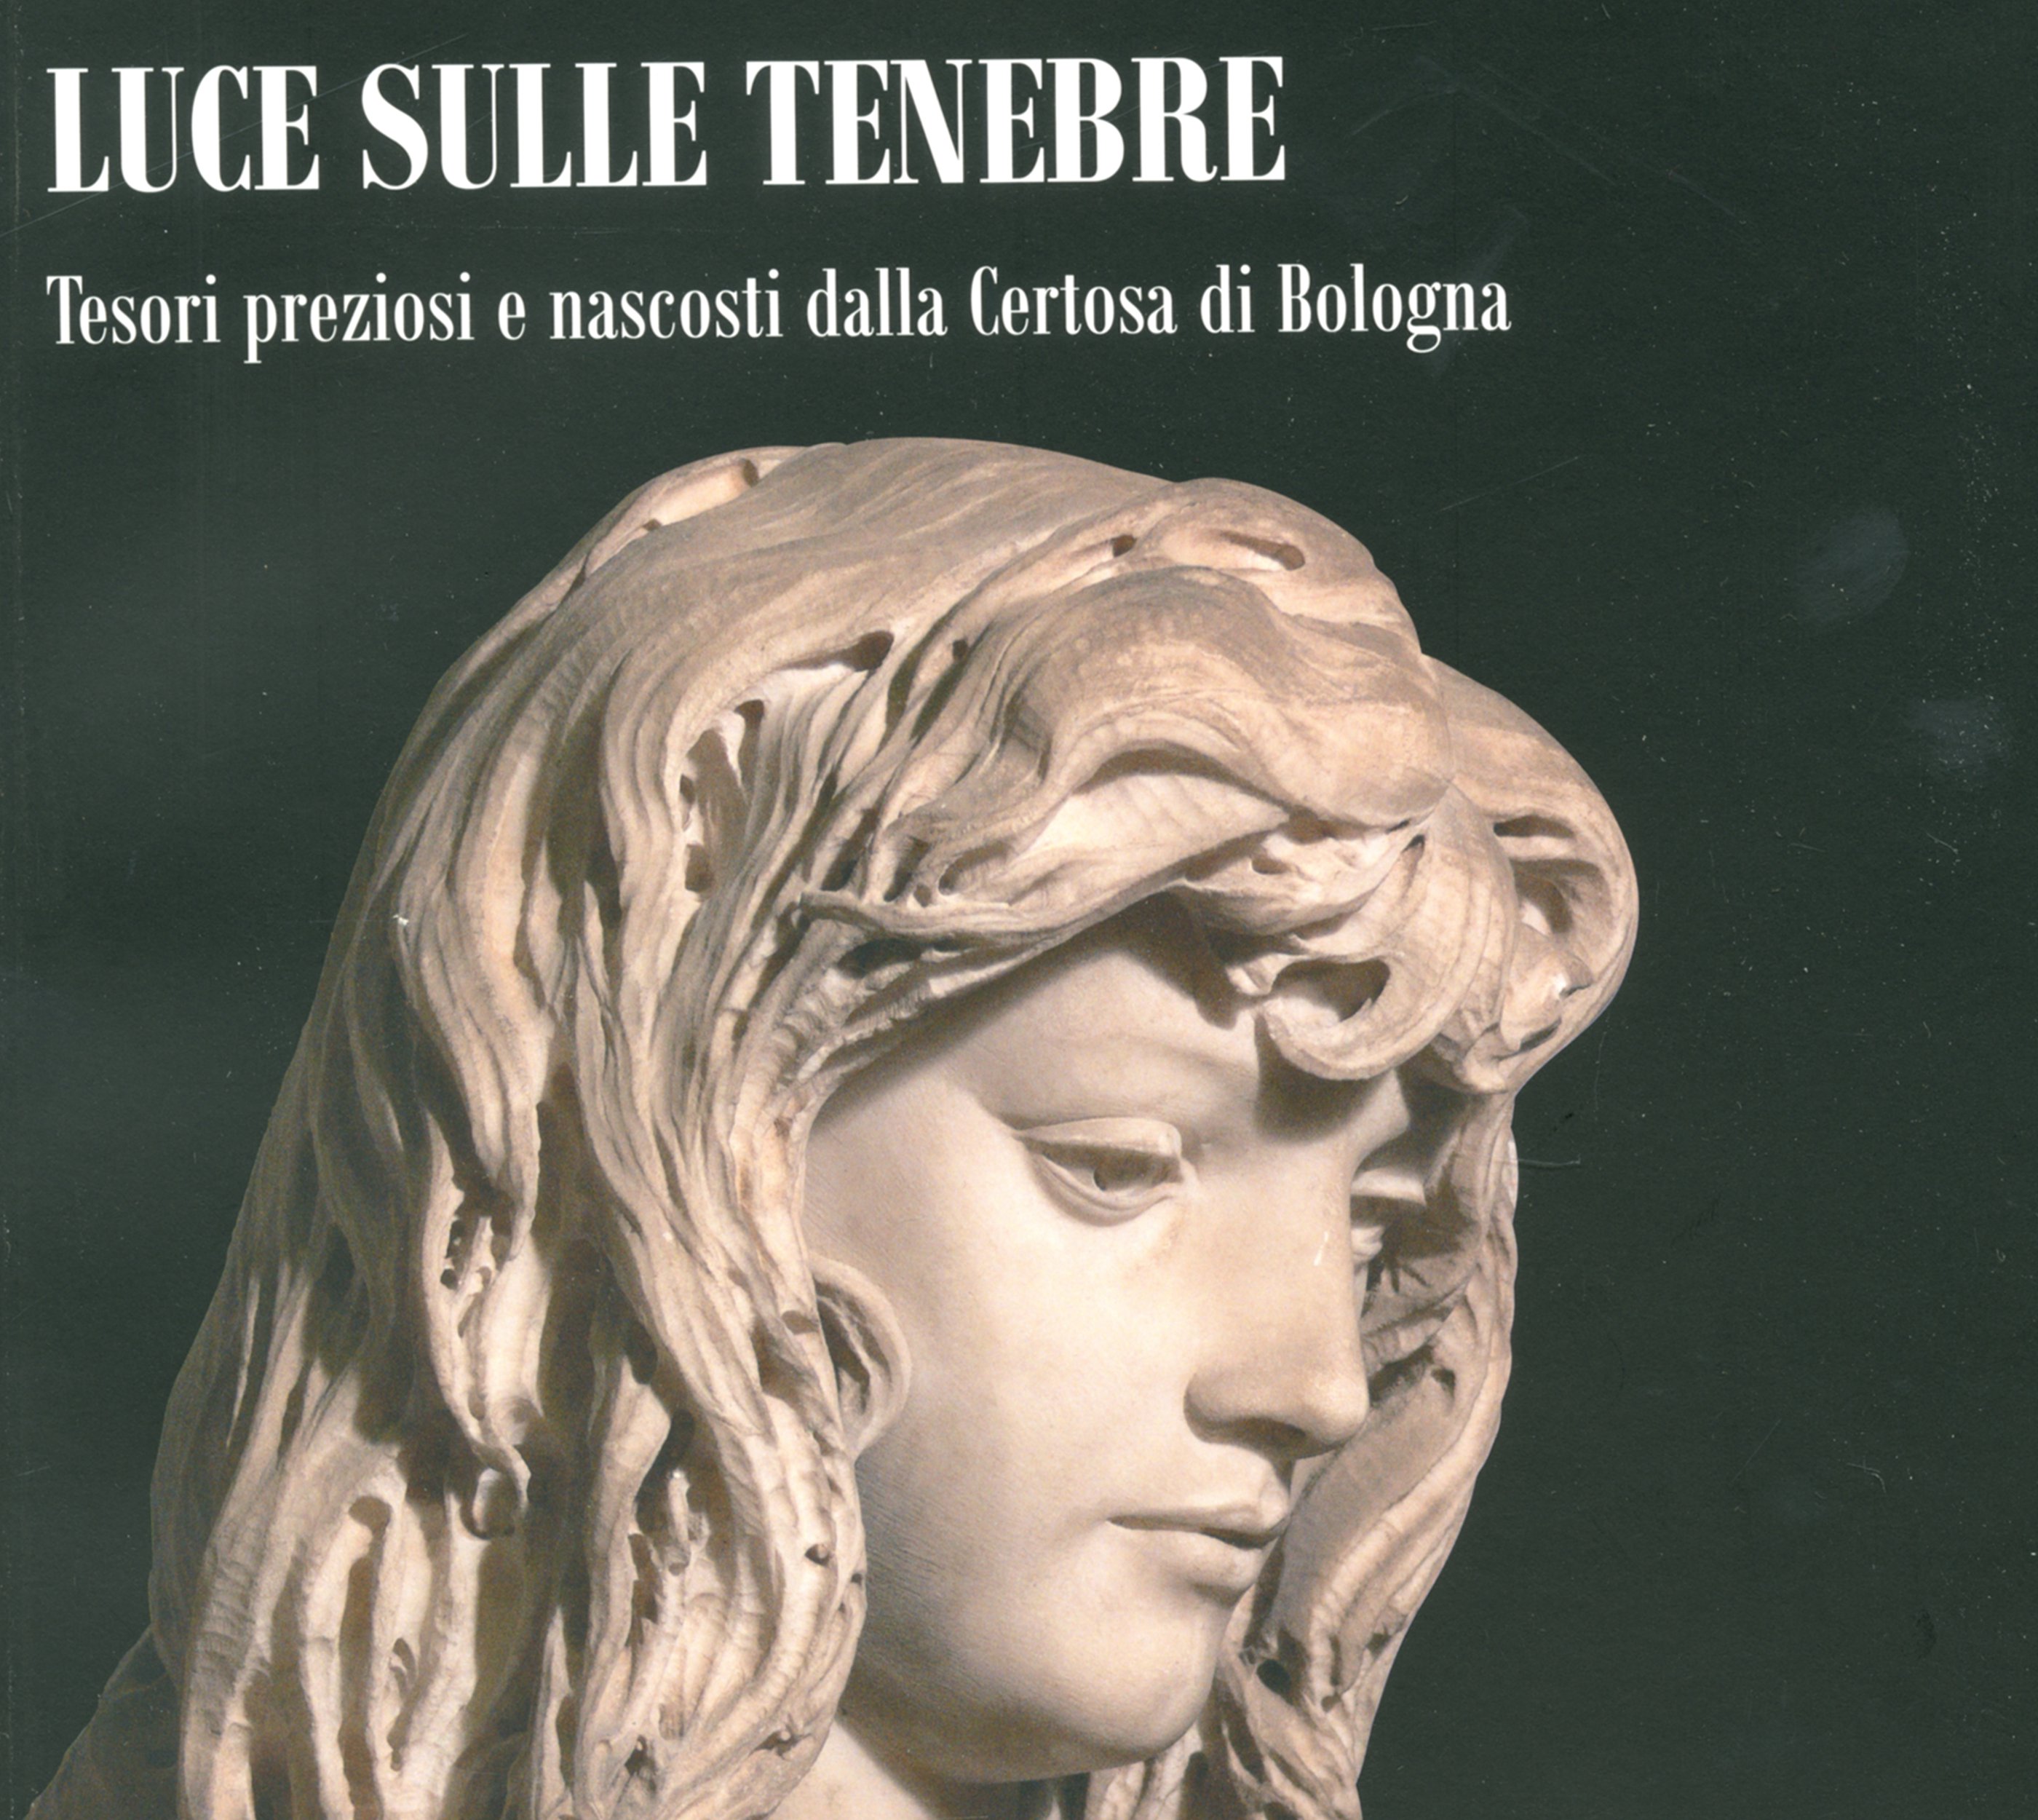 Luce sulle tenebre - Tesori preziosi e nascosti dalla Certosa di Bologna, Bologna, Bononia University Press, 201